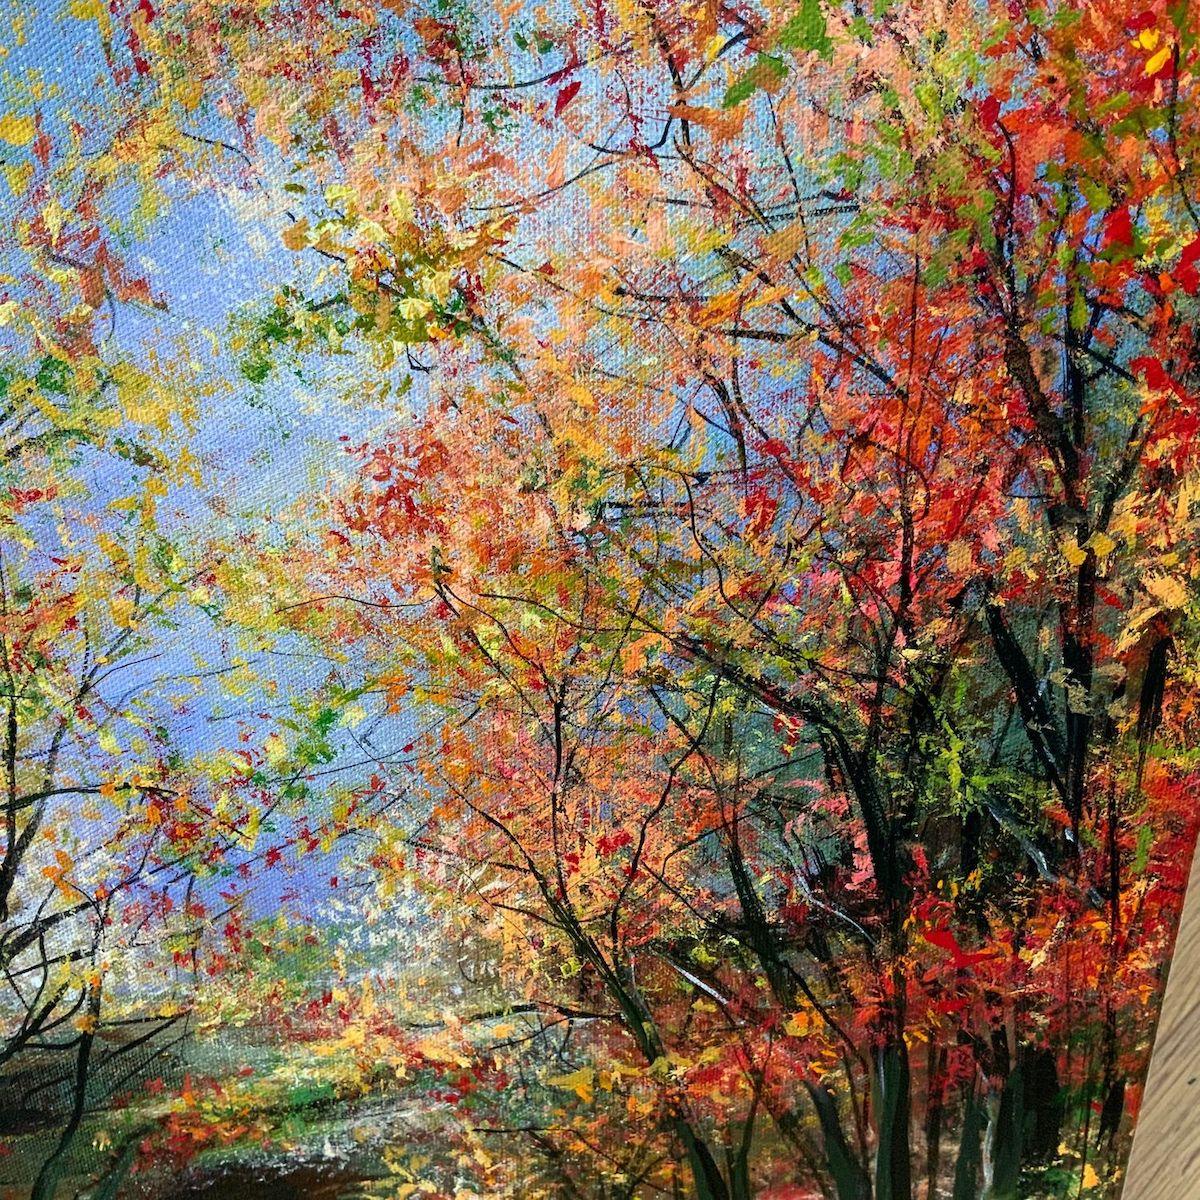 Autumn Blaze Fairy Glen par Jan Rogers [2022]
original et signé à la main par l'artiste 
Acryliques
Taille de l'image : H:50 cm x L:50 cm
Dimensions complètes de l'œuvre non encadrée : H:50 cm x L:50 cm x P:1.8cm
Vendu sans cadre
Veuillez noter que